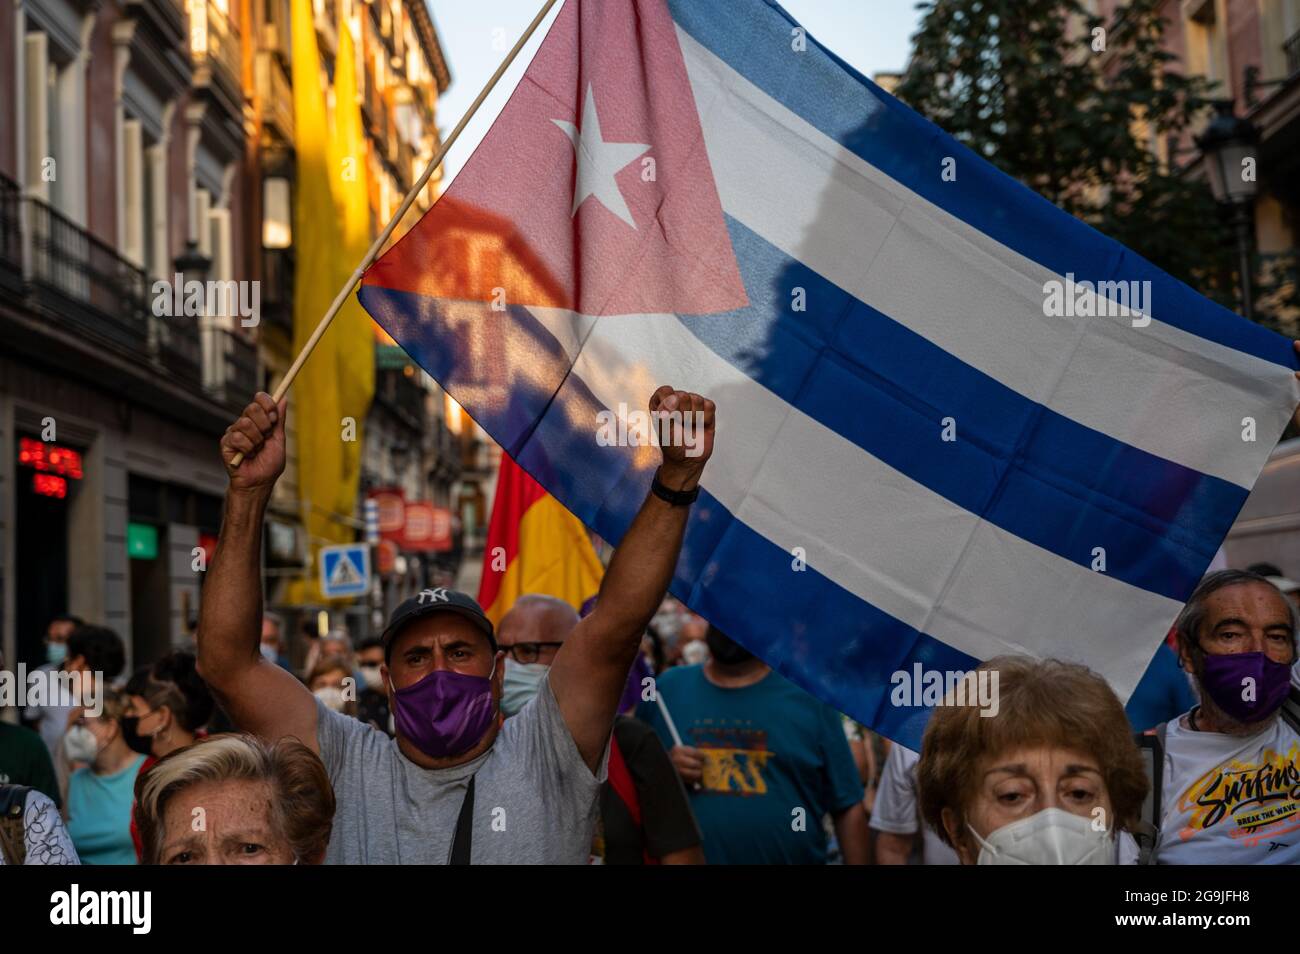 Madrid, Spagna. 26 luglio 2021. Un manifestante che porta una bandiera cubana che alza la mano durante una manifestazione contro l'embargo economico statunitense su Cuba, in coincidenza con il 26 luglio, il giorno in cui la rivoluzione cubana è iniziata nel 1953, 68 anni fa. Credit: Marcos del Mazo/Alamy Live News Foto Stock